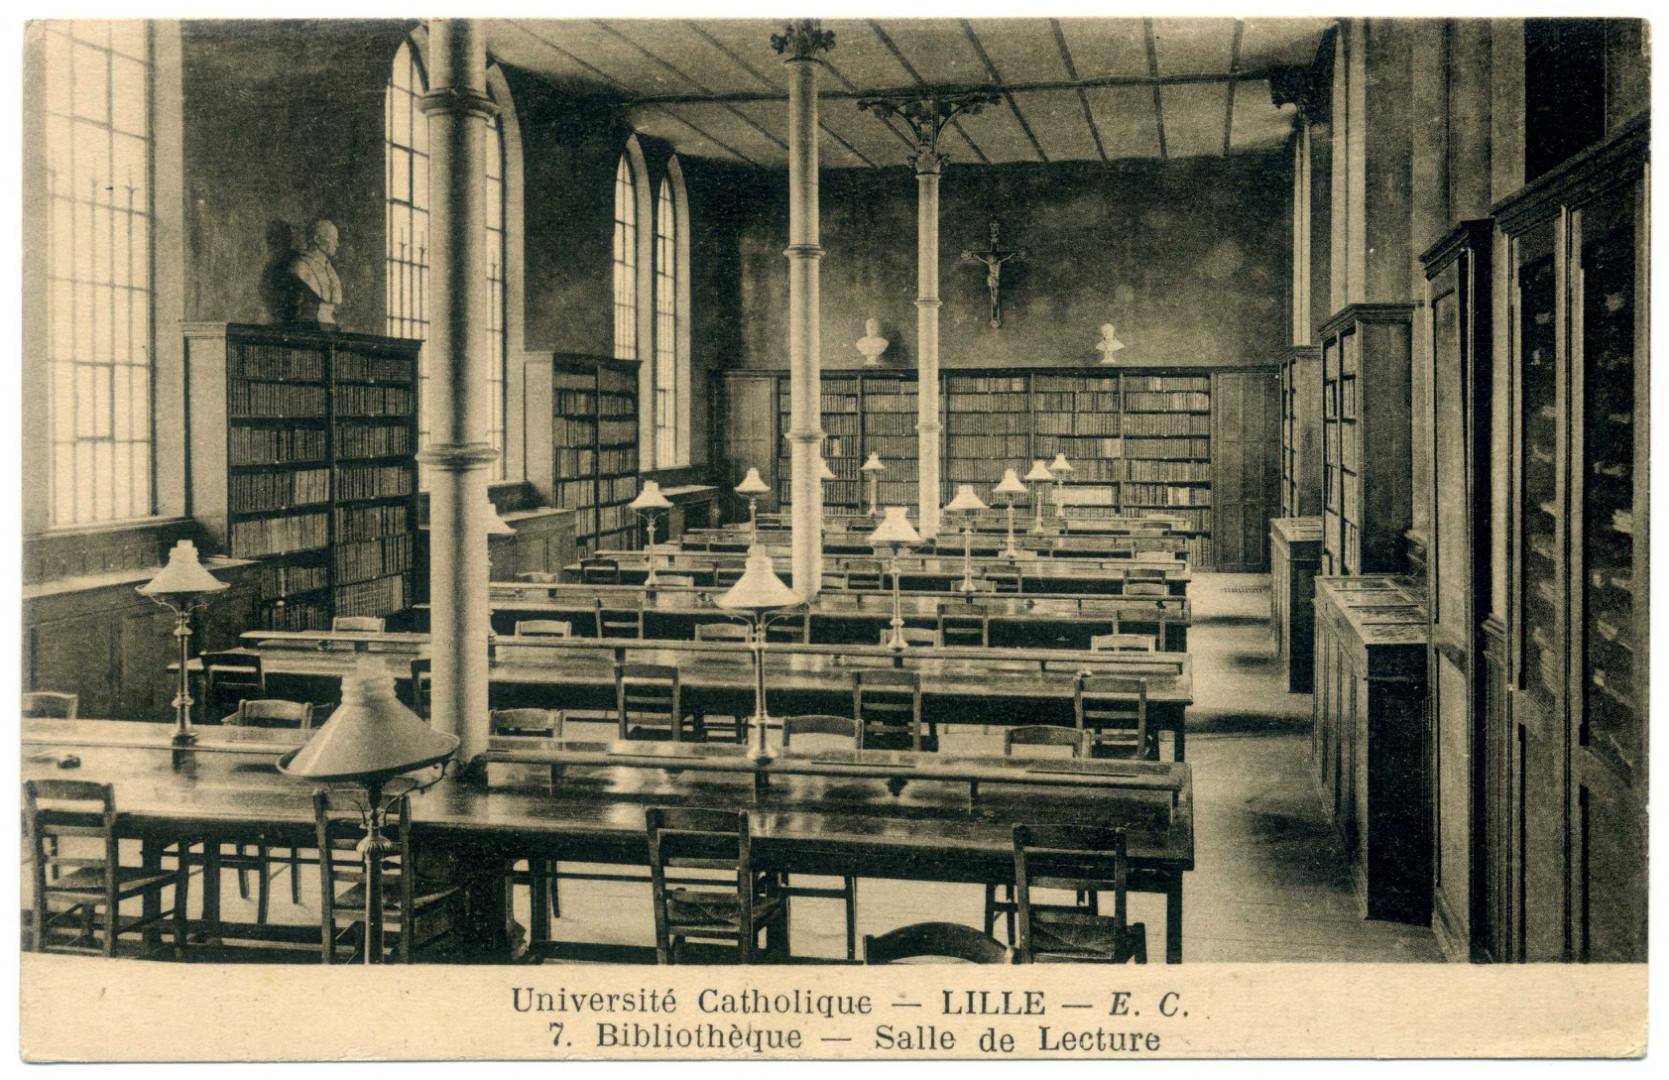 Lille: Université Catholique, Bibliothèque